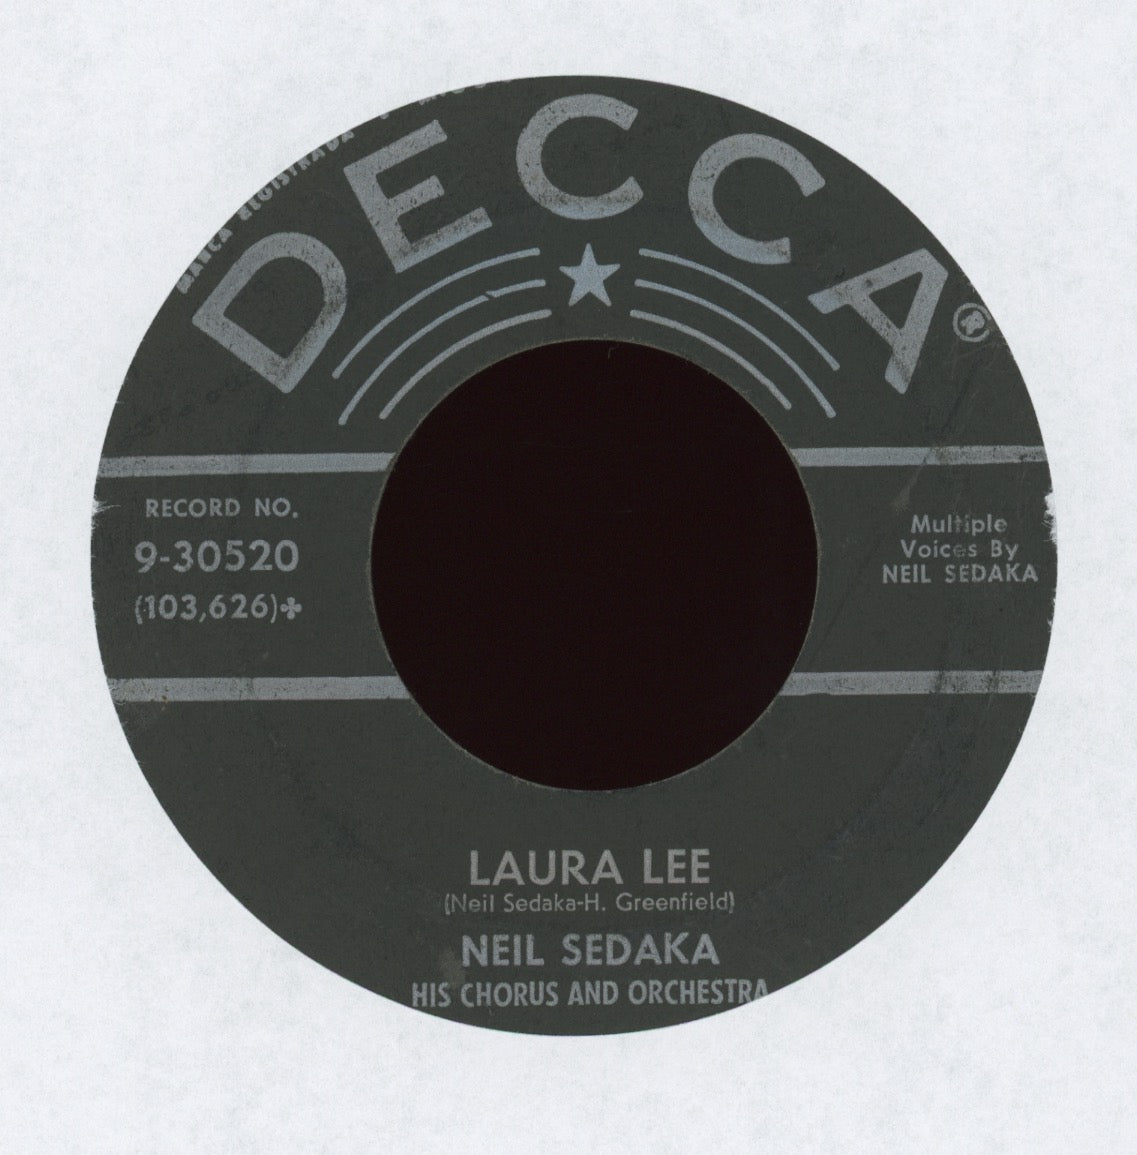 Neil Sedaka - Laura Lee on Decca